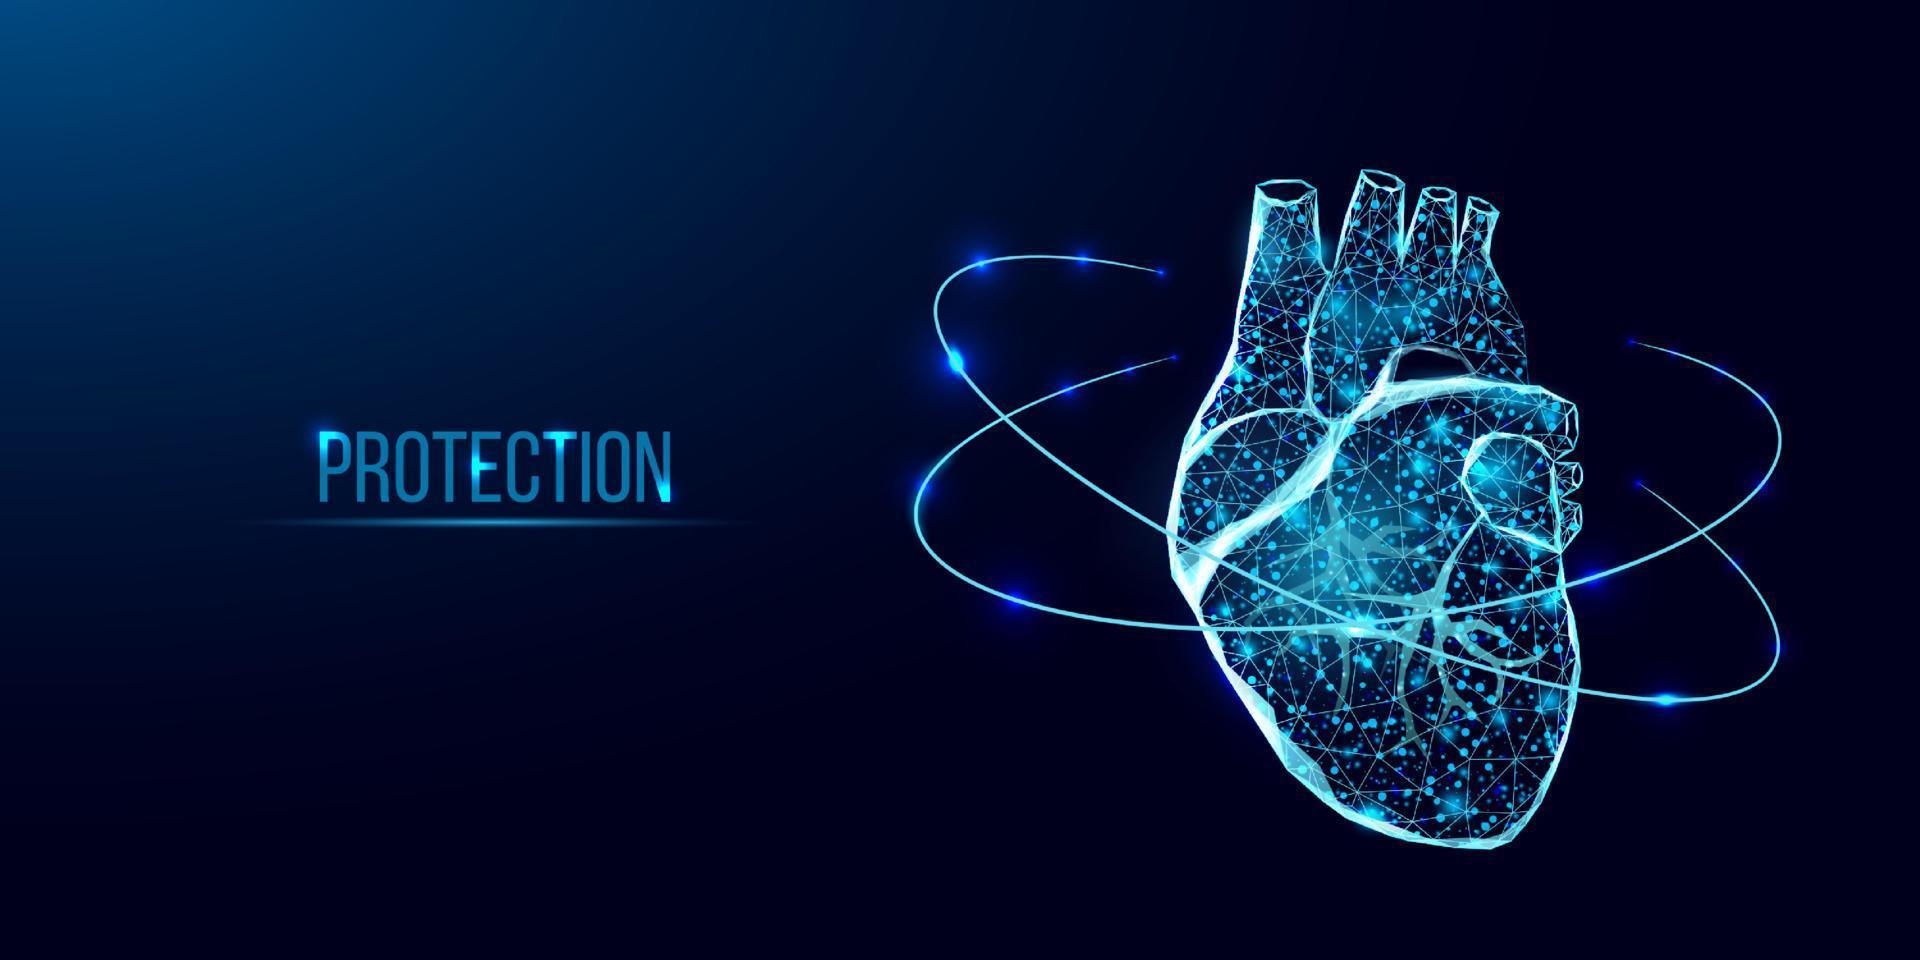 Schutz des menschlichen Herzens. Wireframe Low-Poly-Stil. konzept für medizinische wissenschaft, kardiologische krankheit. abstrakte moderne 3D-Vektorillustration auf dunkelblauem Hintergrund. vektor